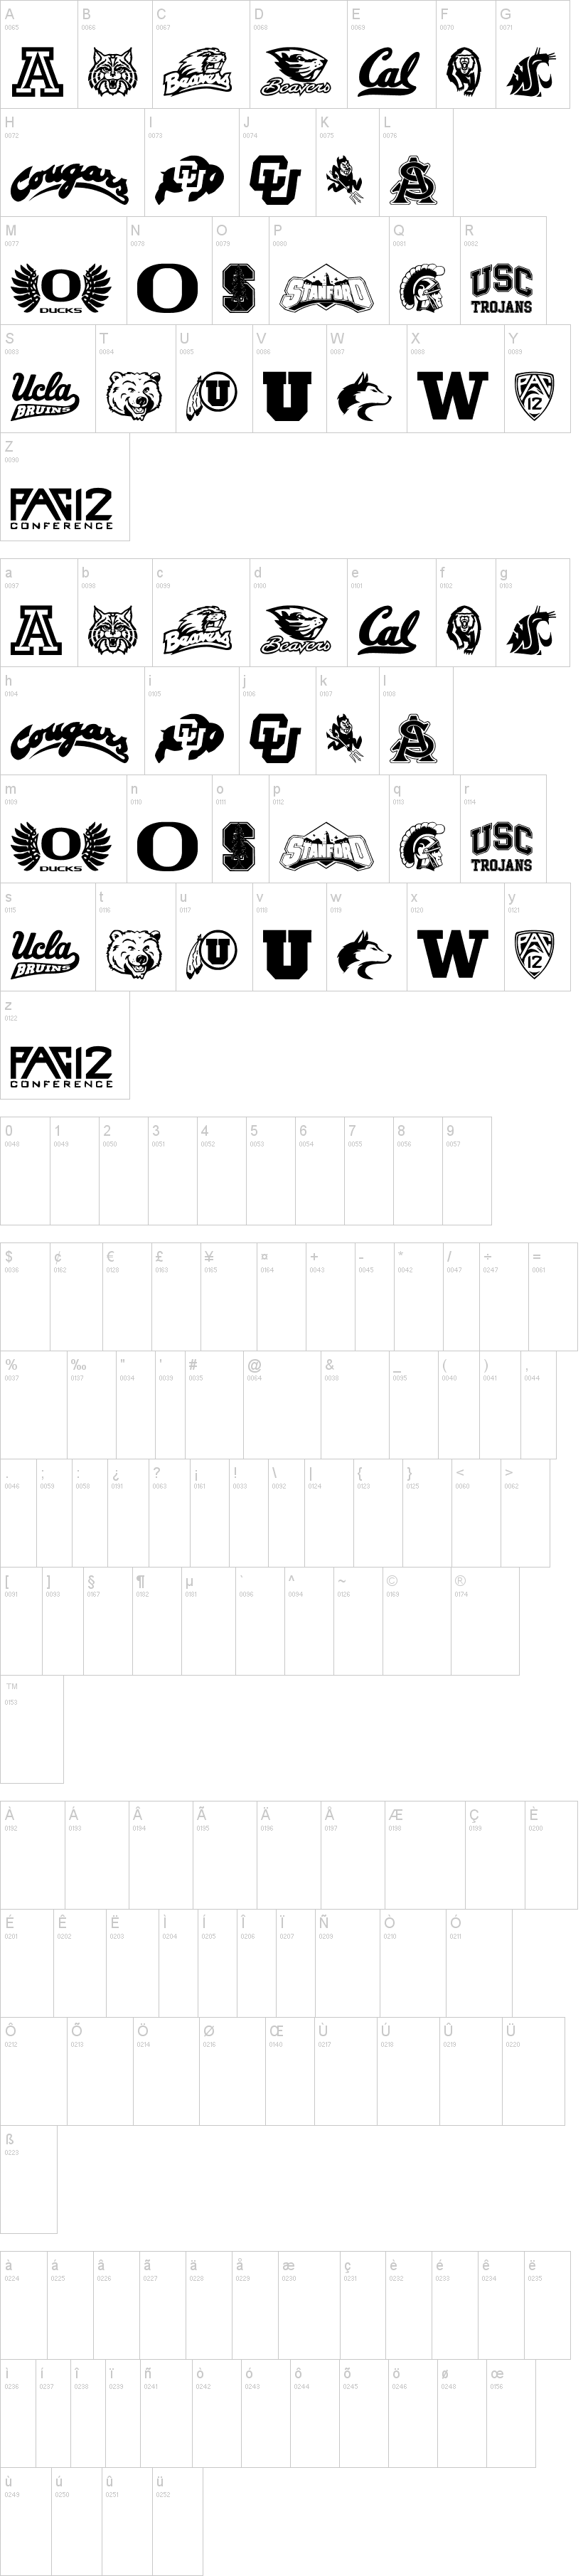 Pac-12